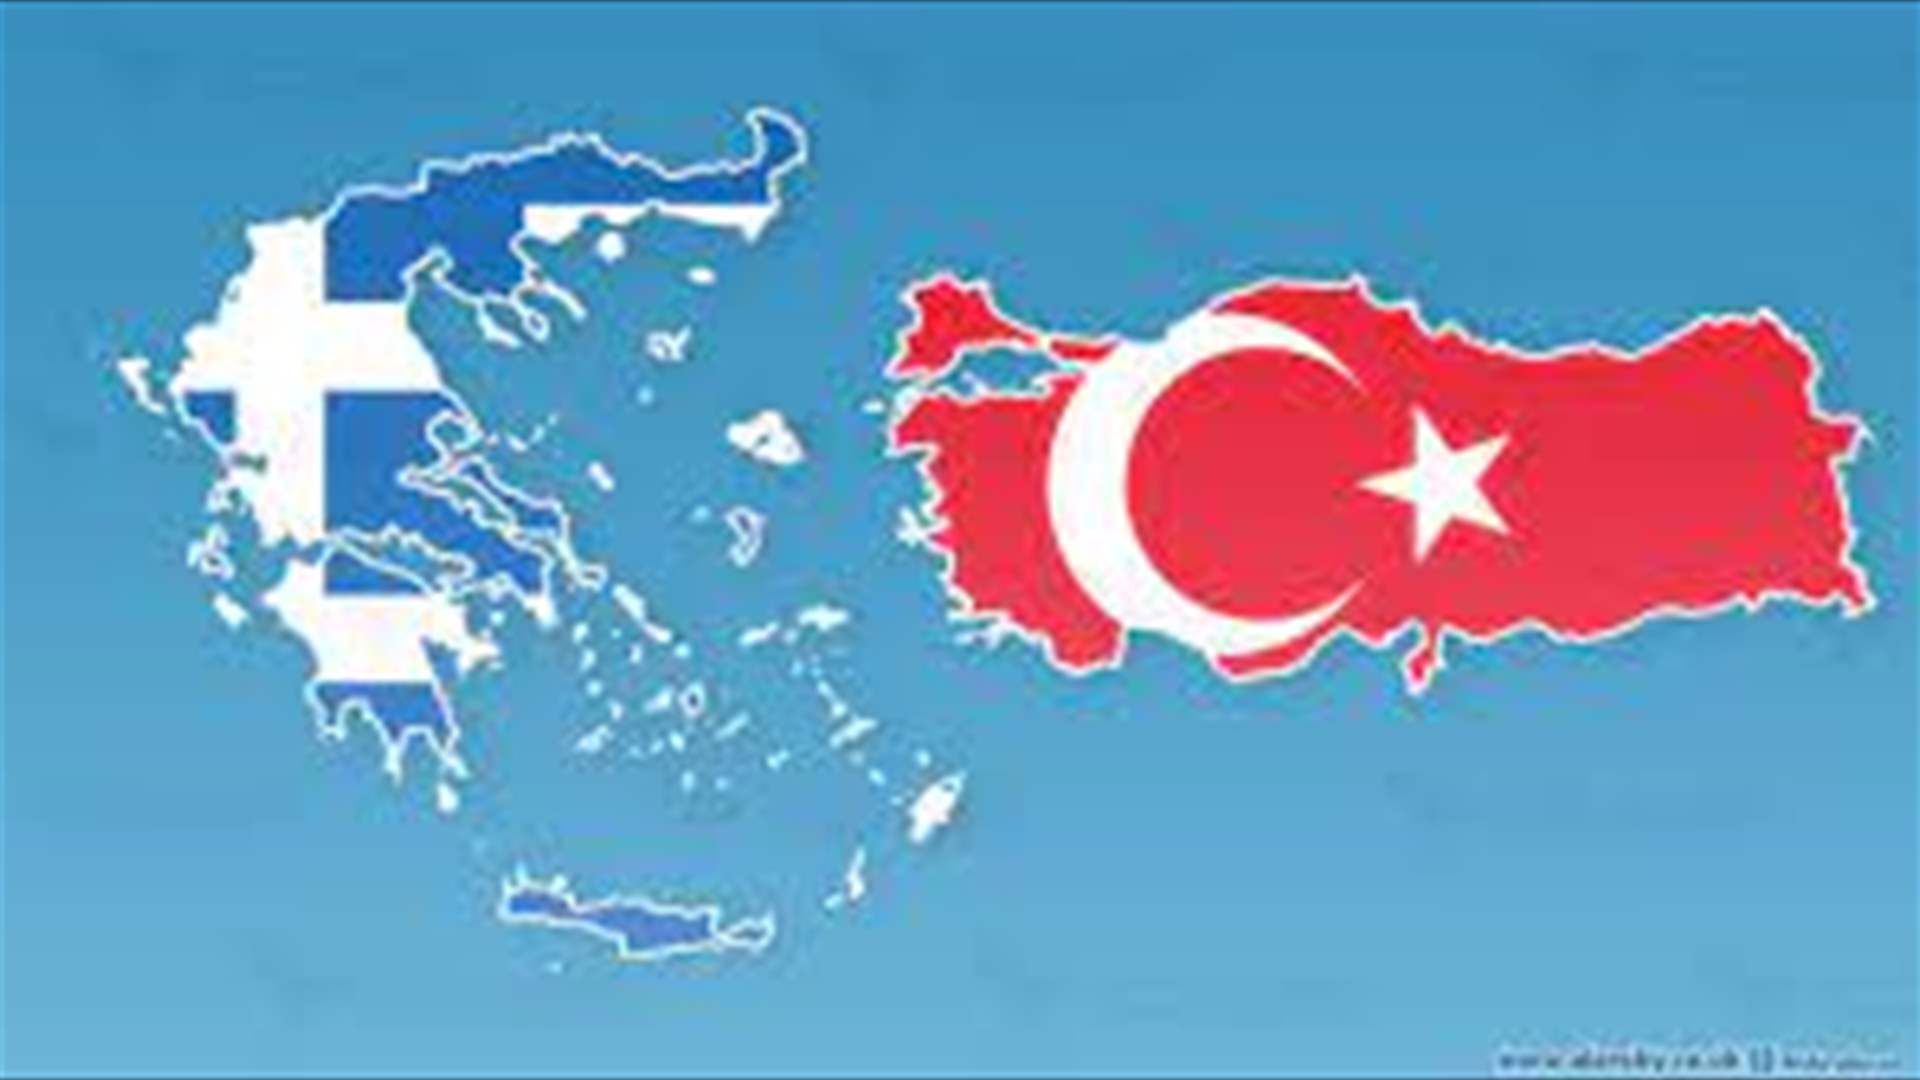 على الرغم من التوترات بين البلدين... رئيس الوزراء اليوناني اتصل بإردوغان لتقديم &quot;مساعدة فورية&quot;